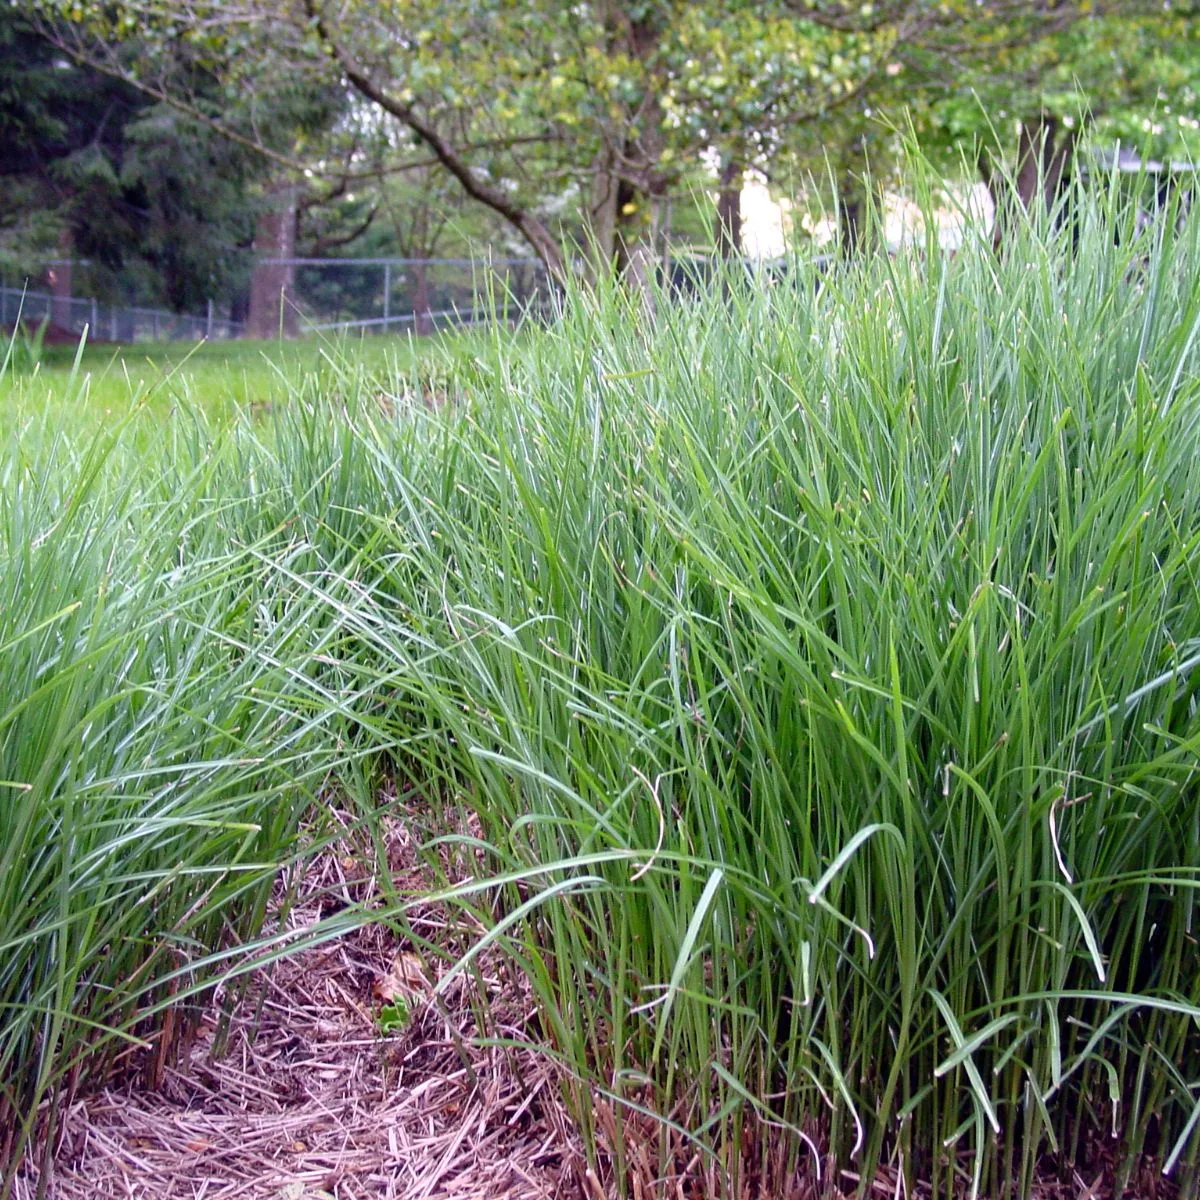 Tall grass in the backyard. 